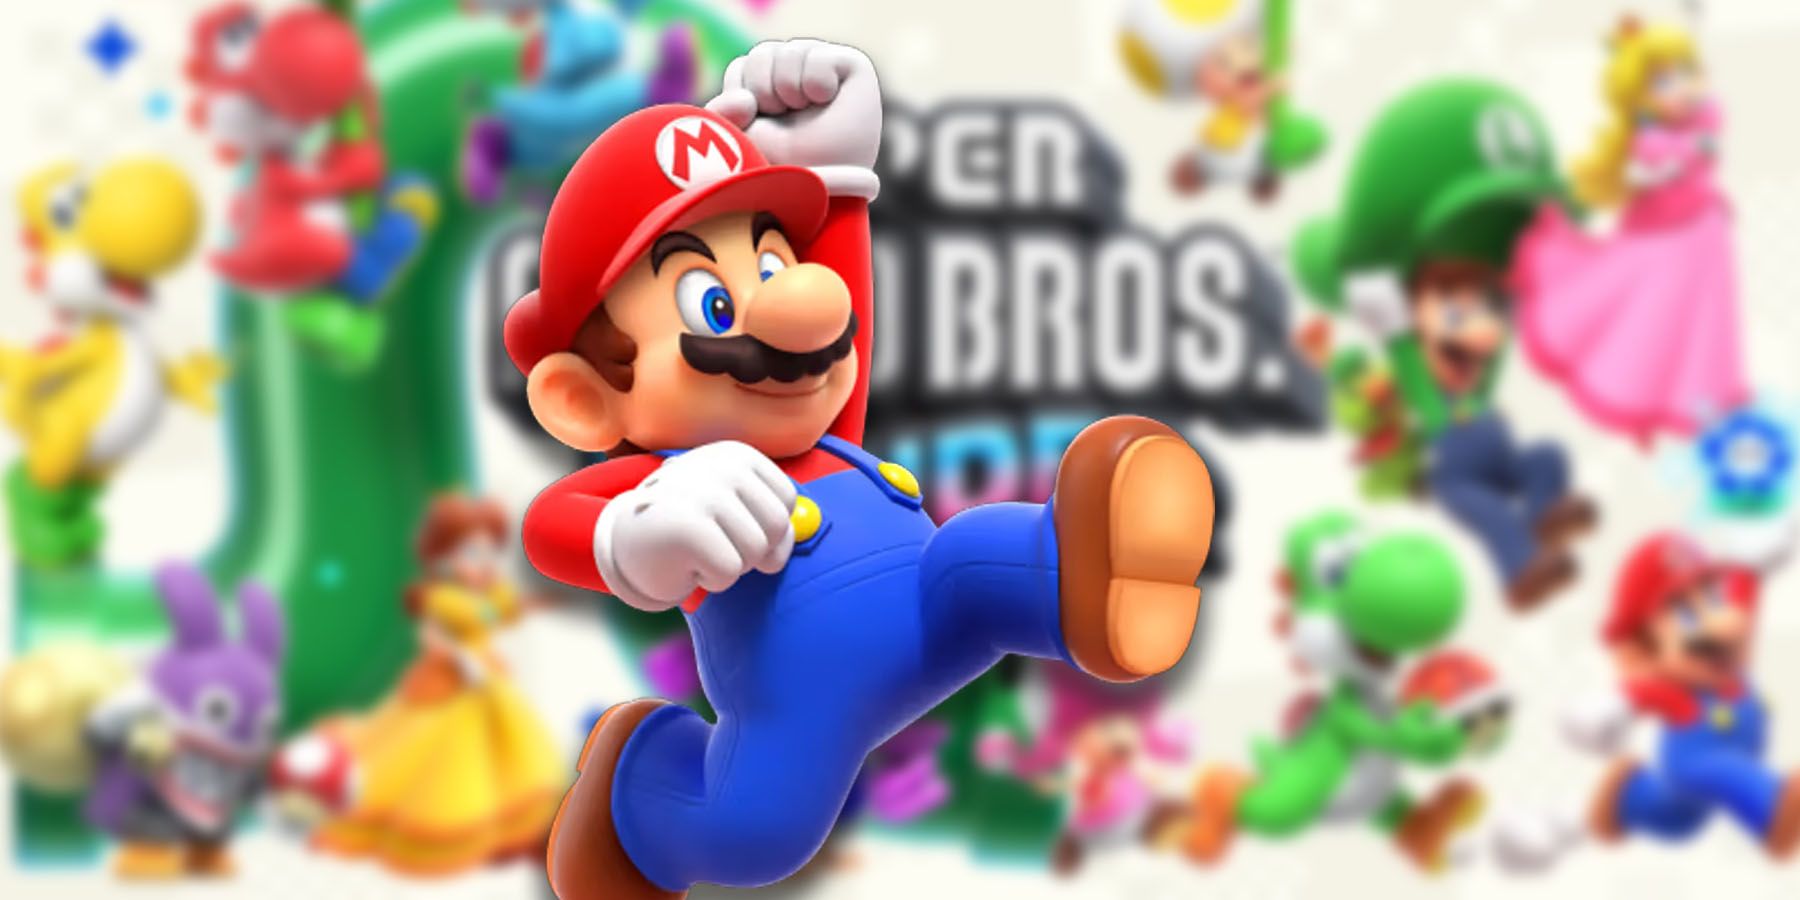 Mario Wonder Render New Voice